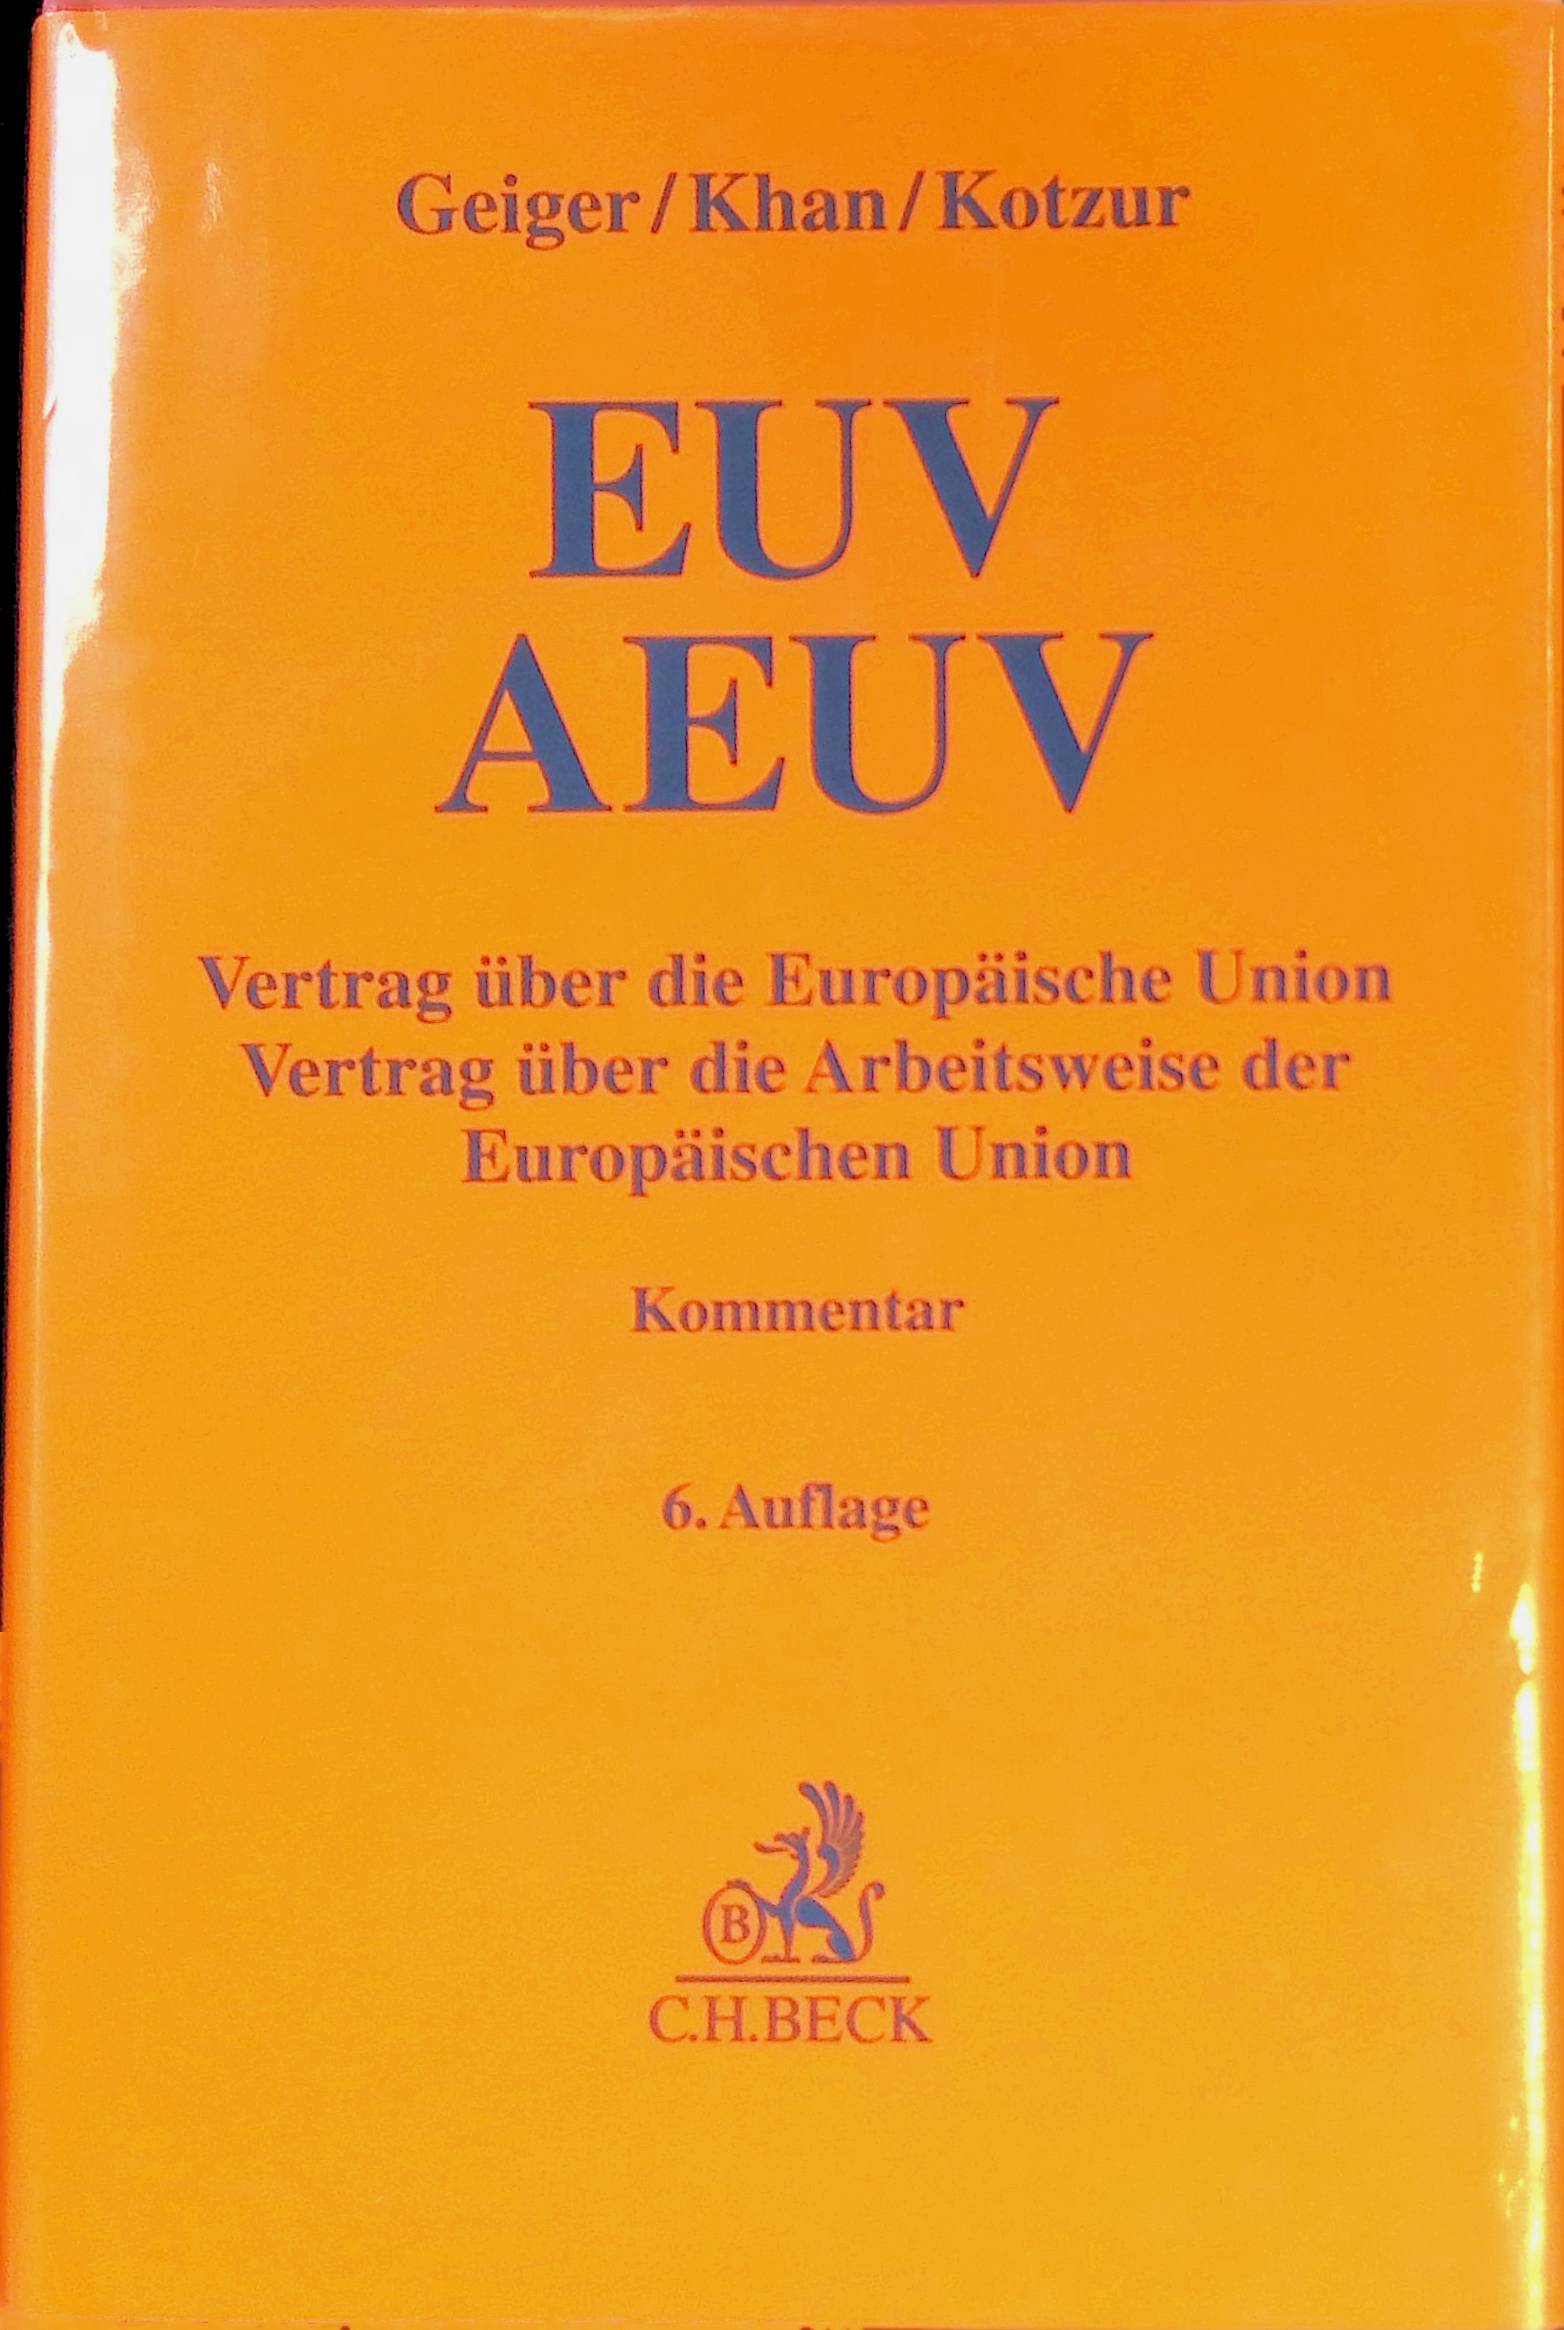 EUV, AEUV : Vertrag über die Europäische Union, Vertrag über die Arbeitsweise der Europäischen Union. Kommentar. - Geiger, Rudolf, Daniel-Erasmus Khan und Markus Kotzur